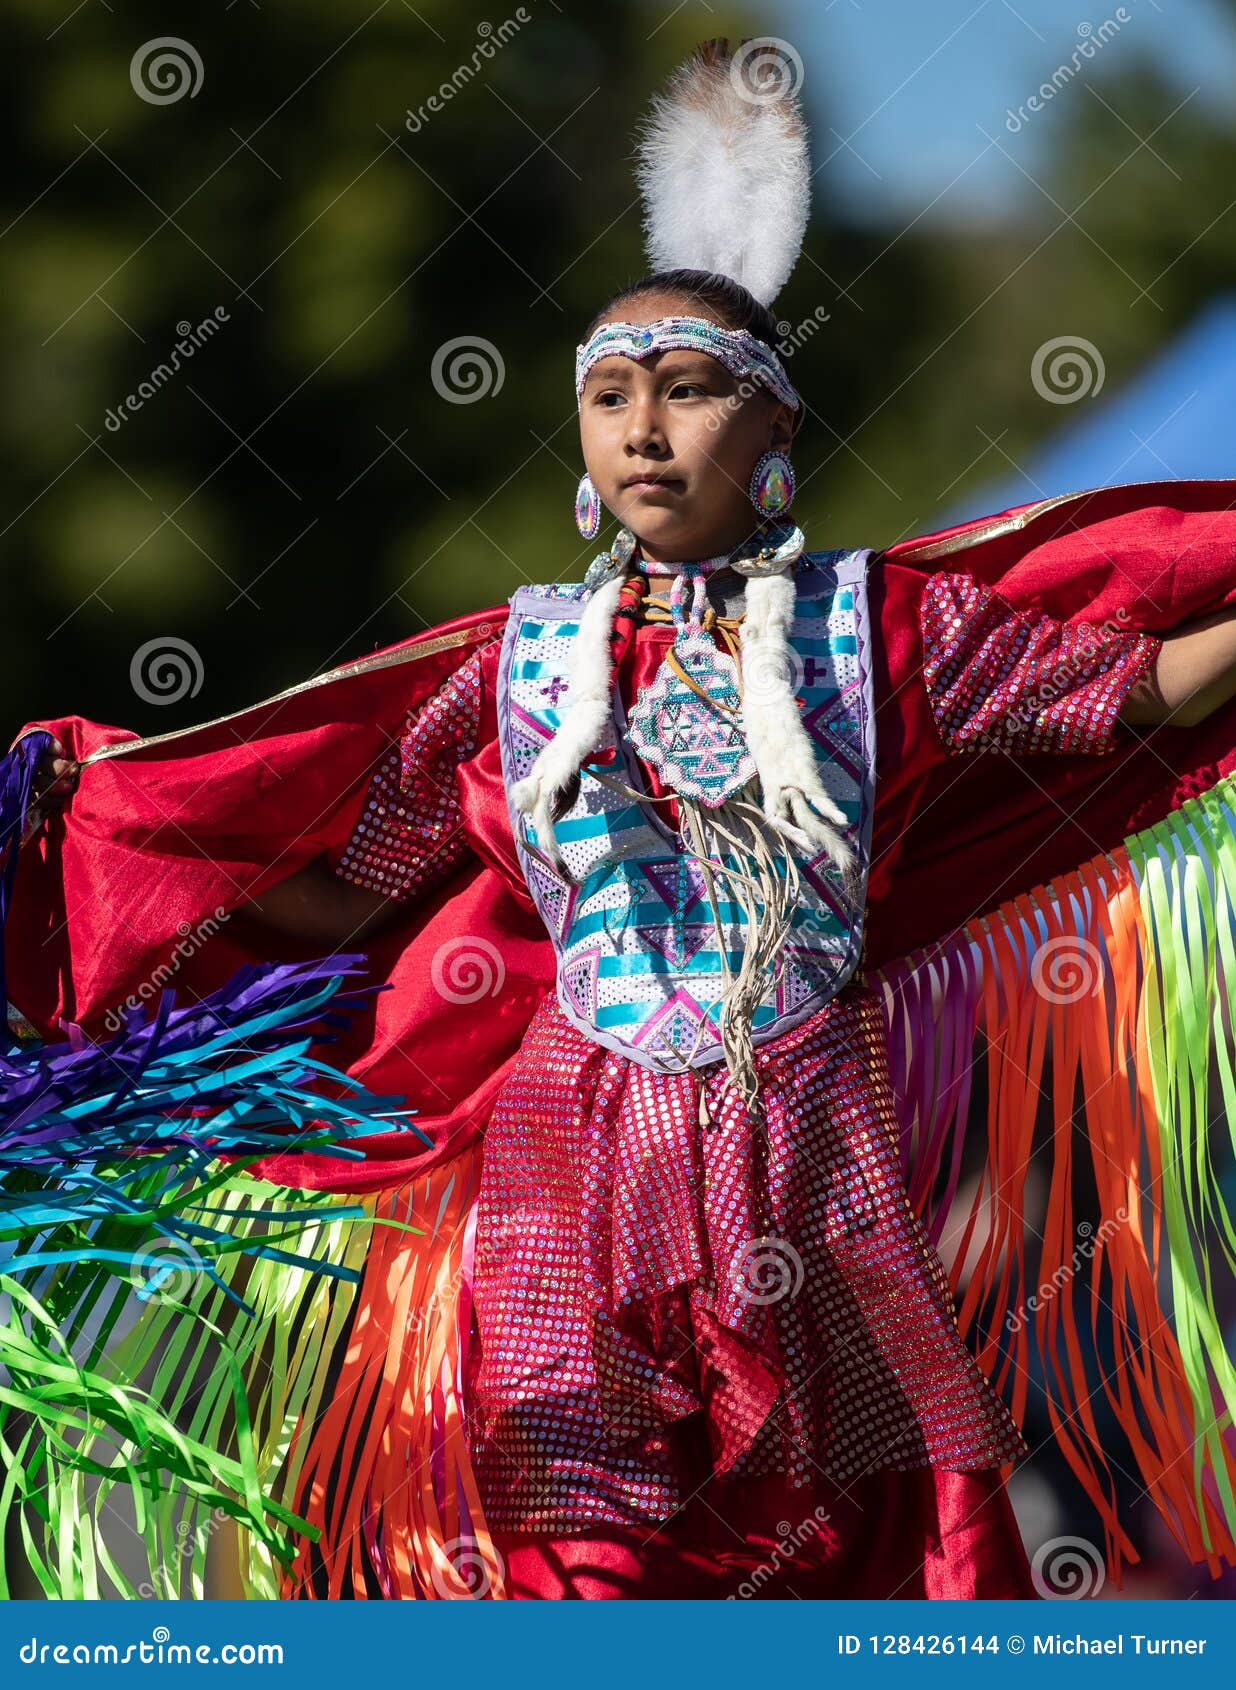 Native American Woman Dancing Editorial Stock Image